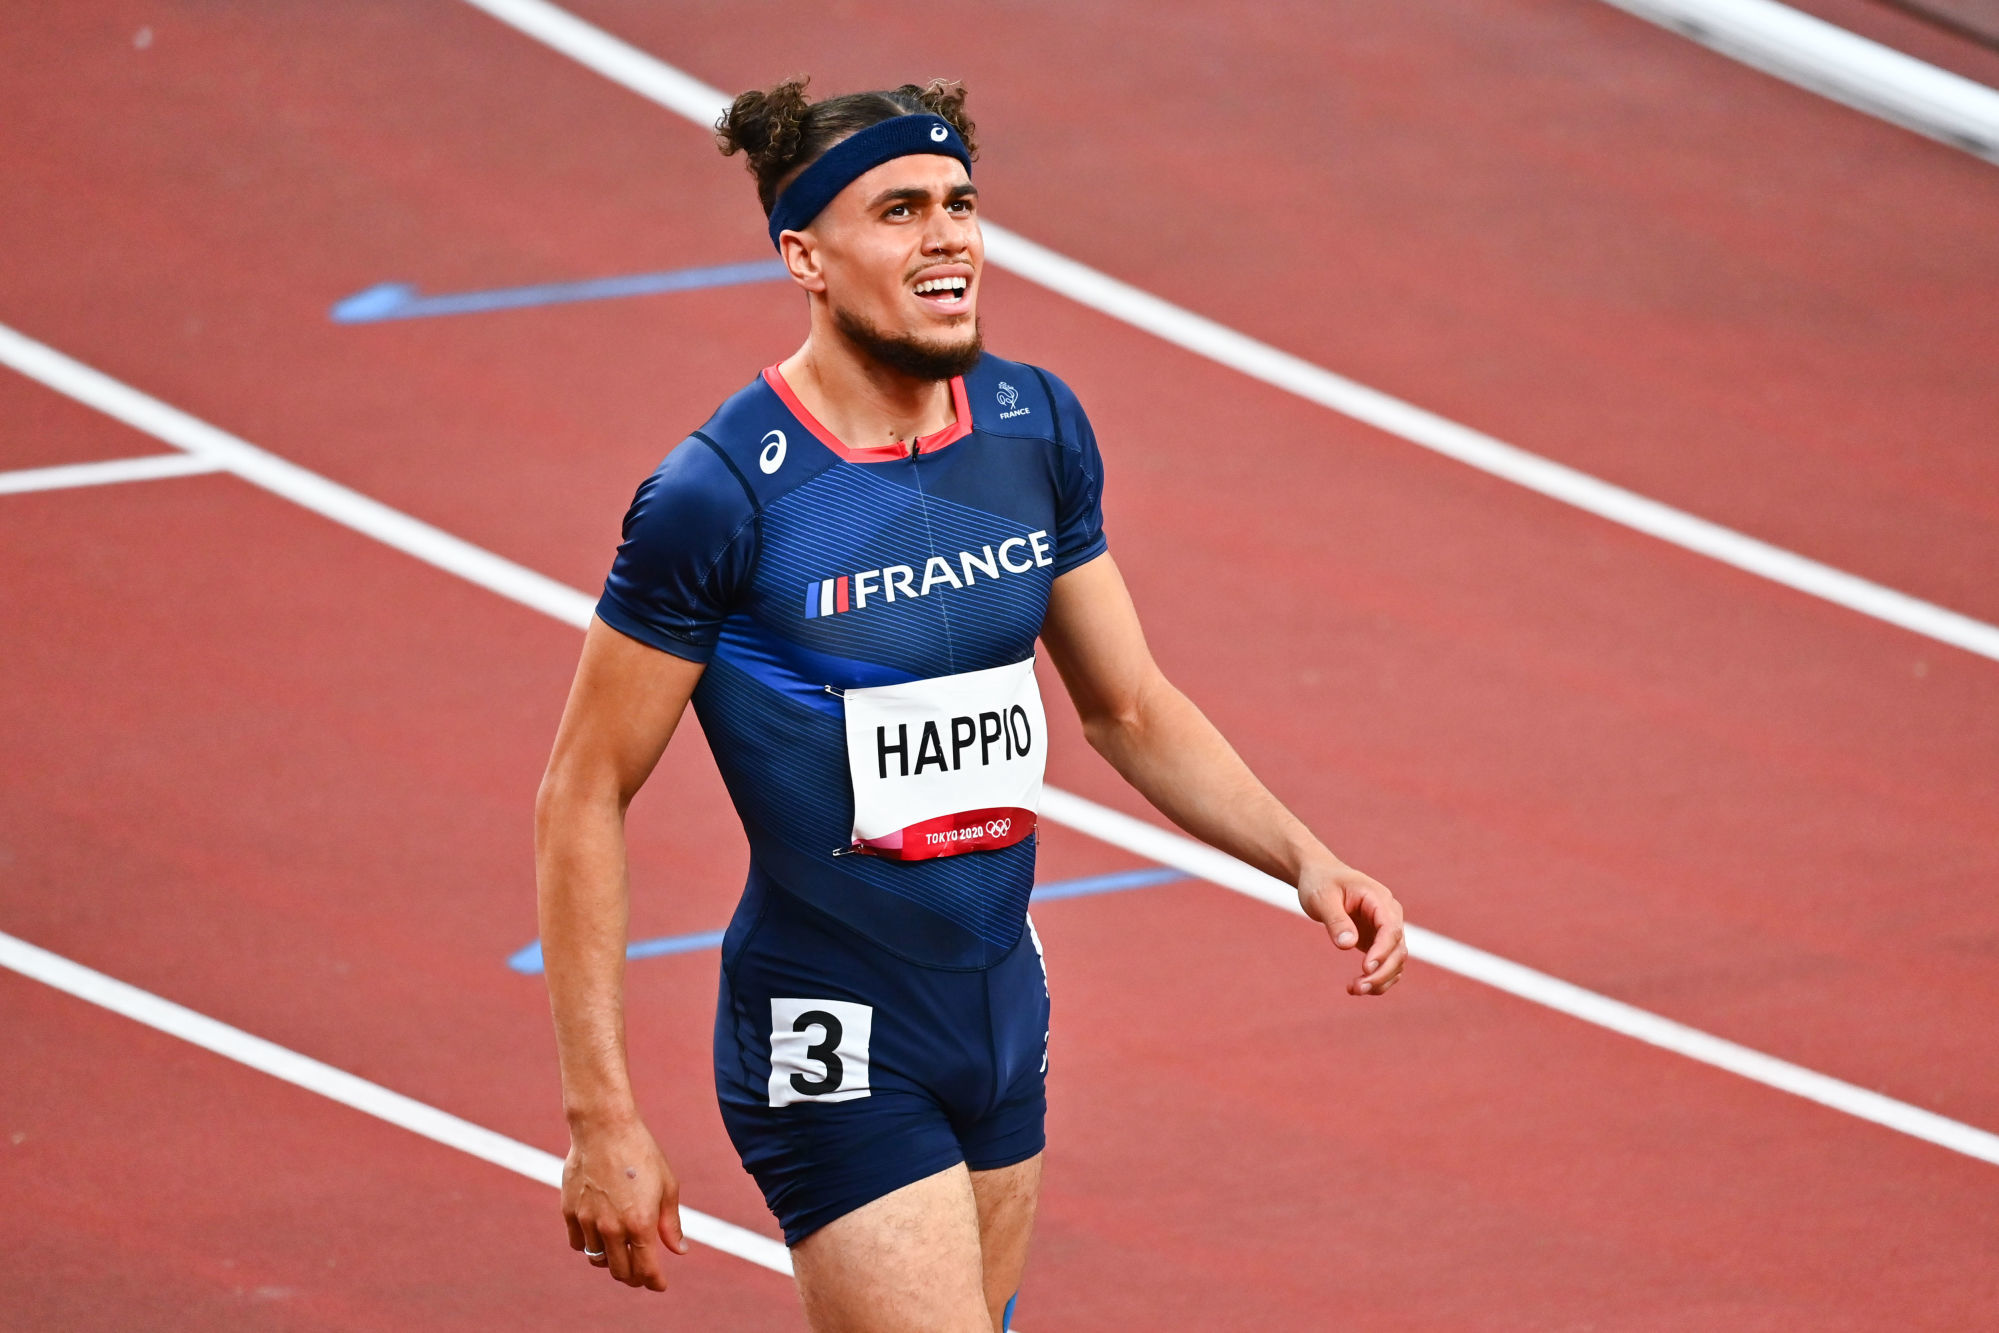 Athlétisme : Des nouvelles d'Happio, agressé juste avant son 400m haies – Sport.fr